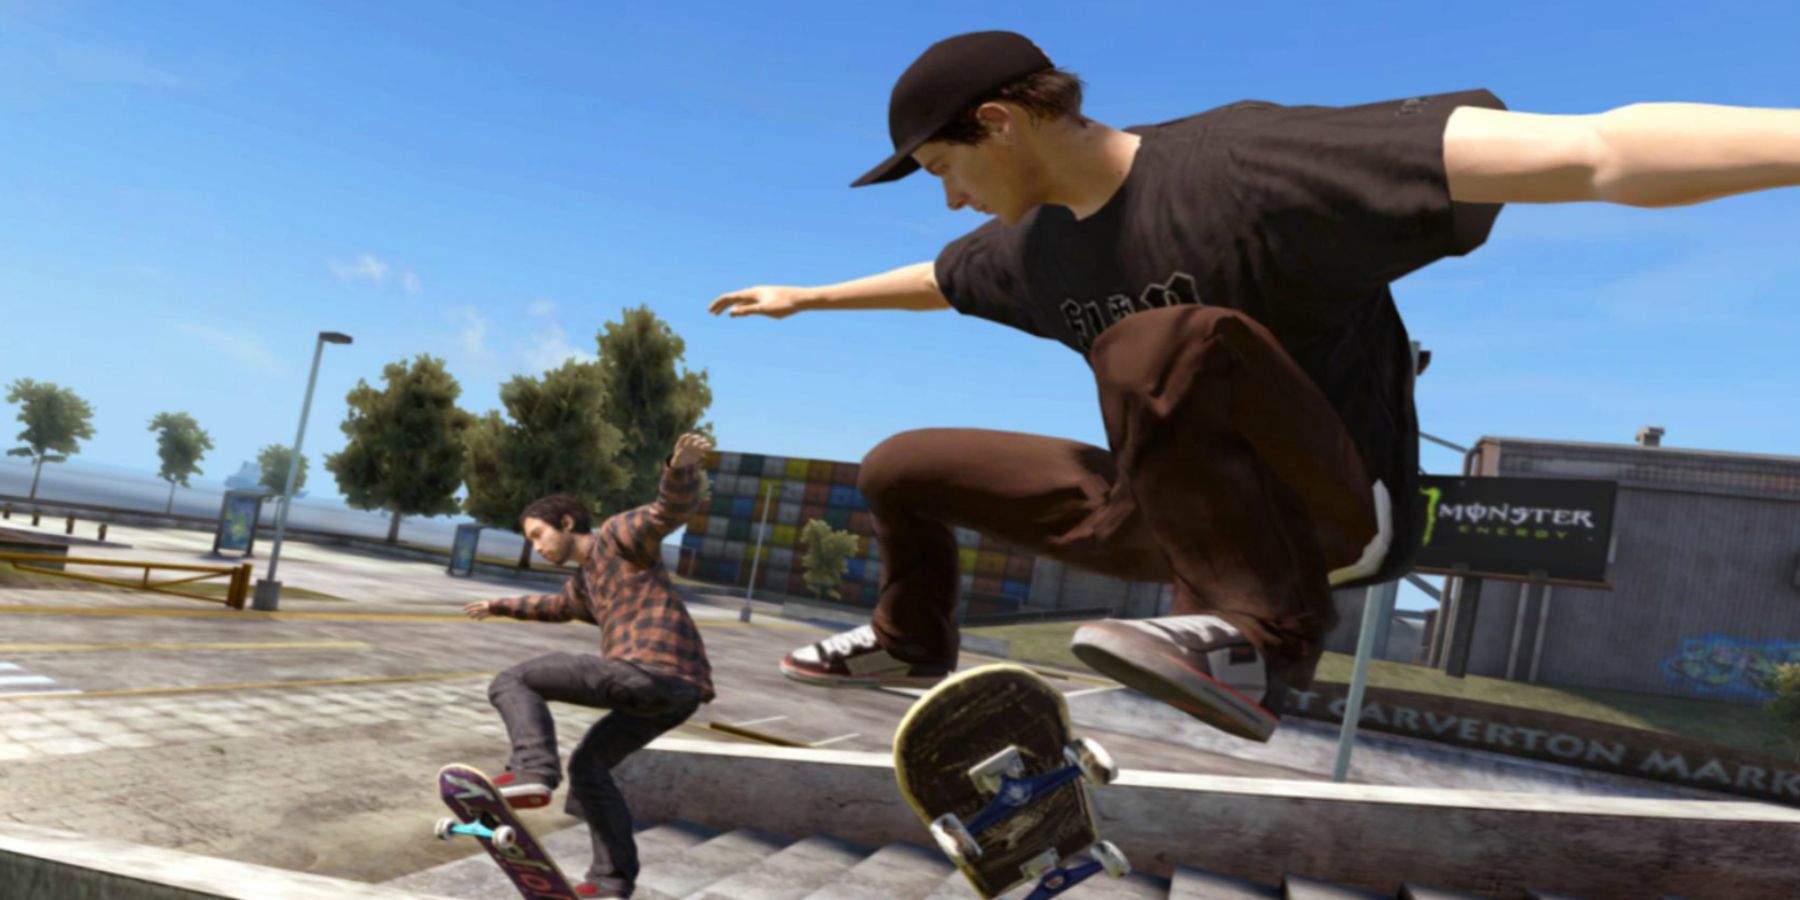 Skate 4 será lançado em breve, confirma CEO da EA